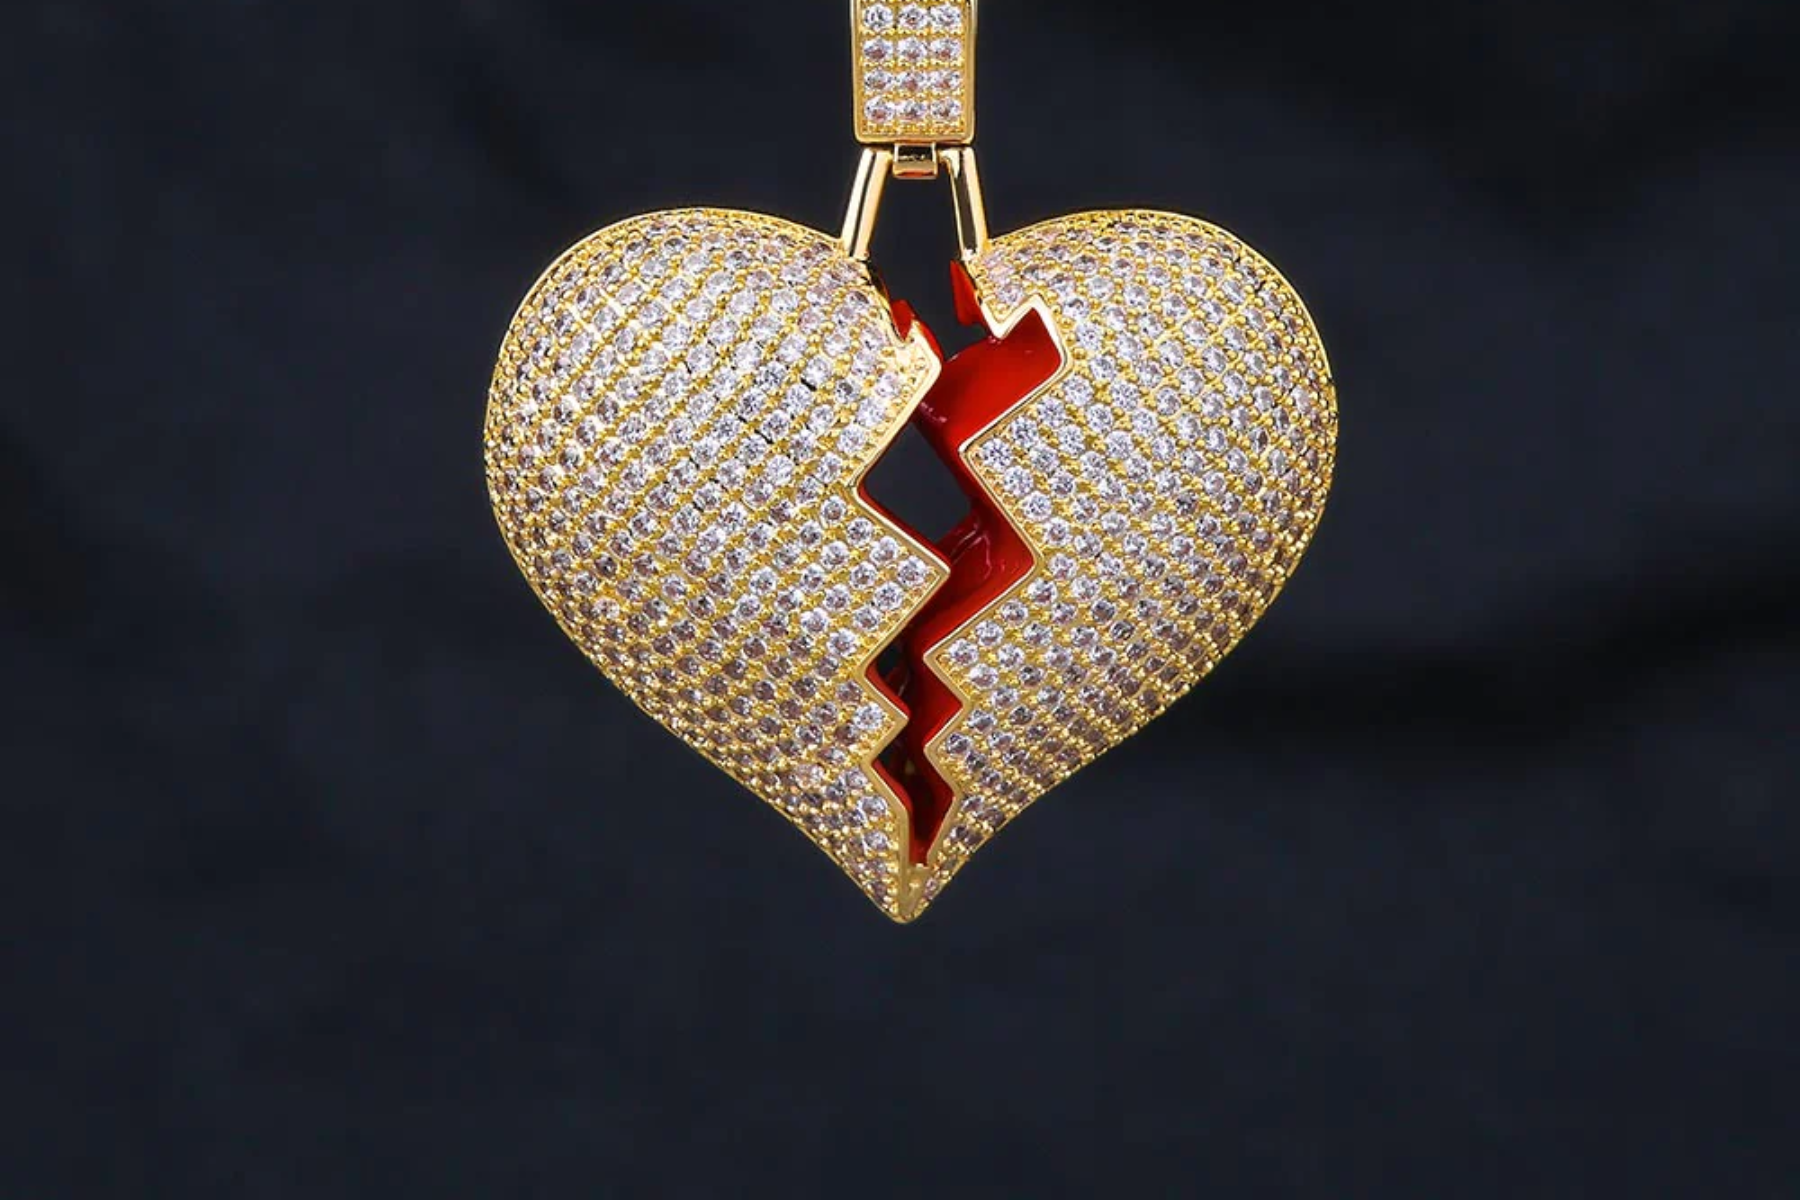 A broken diamond heart pendant necklace